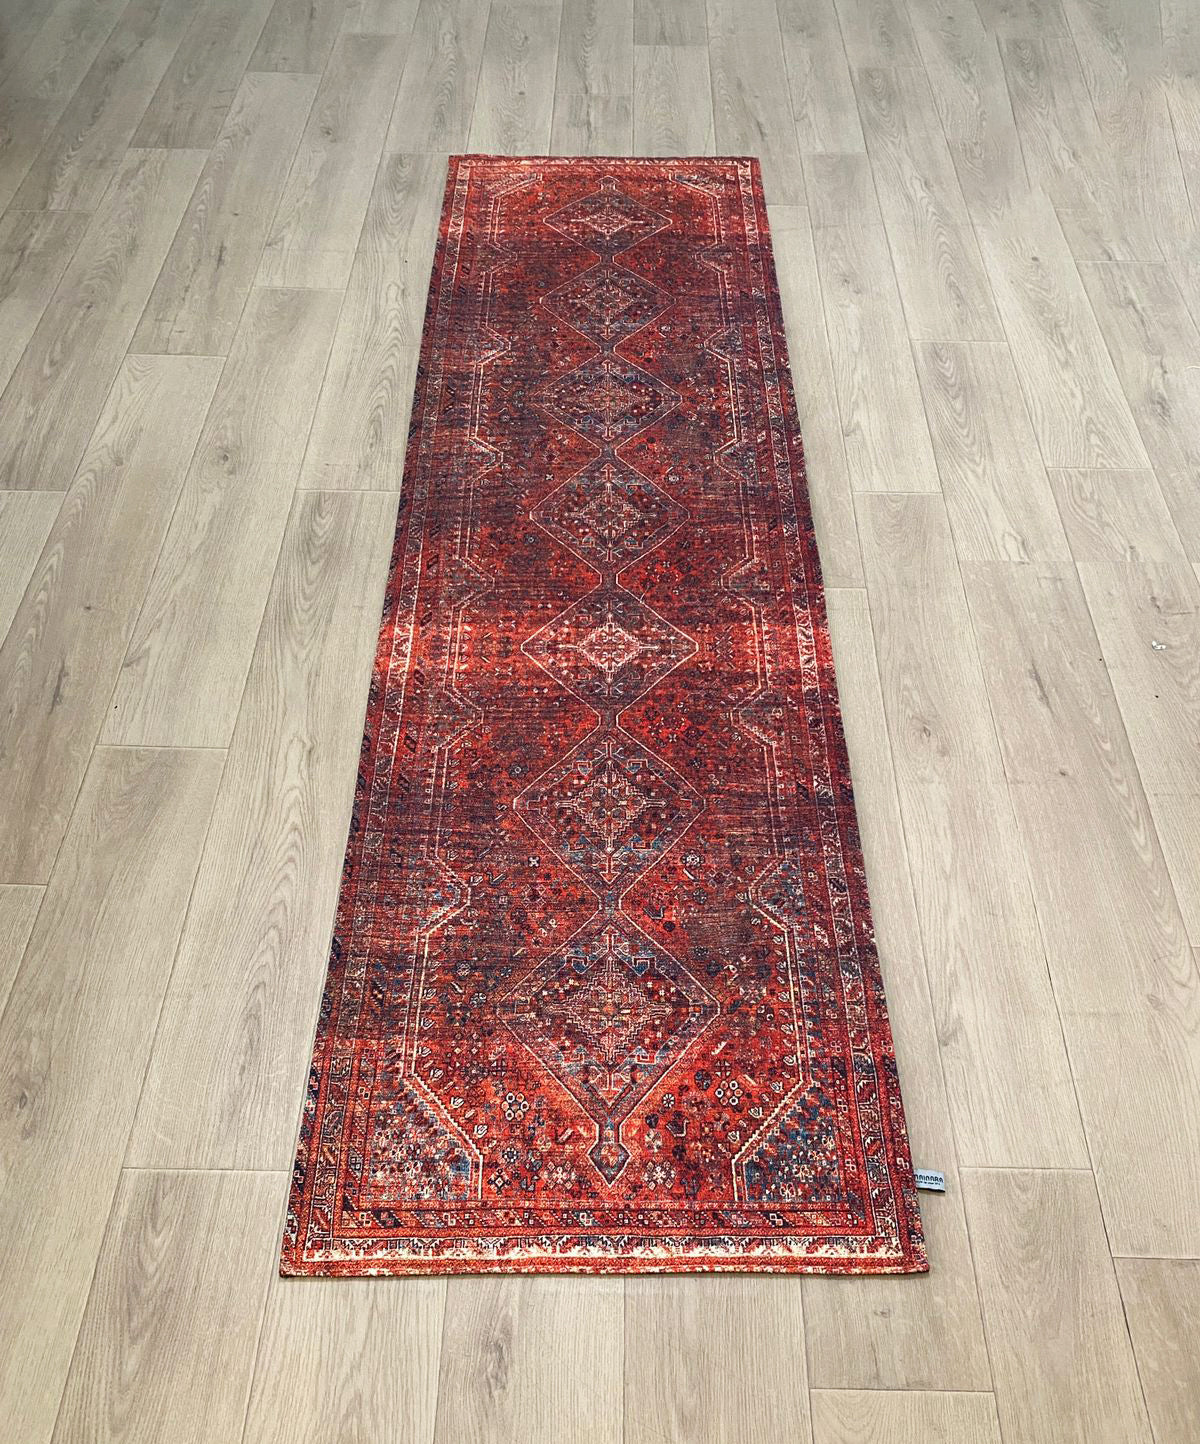 Karpet Tradisional (MR-T-0007) - Red,Grey,Black